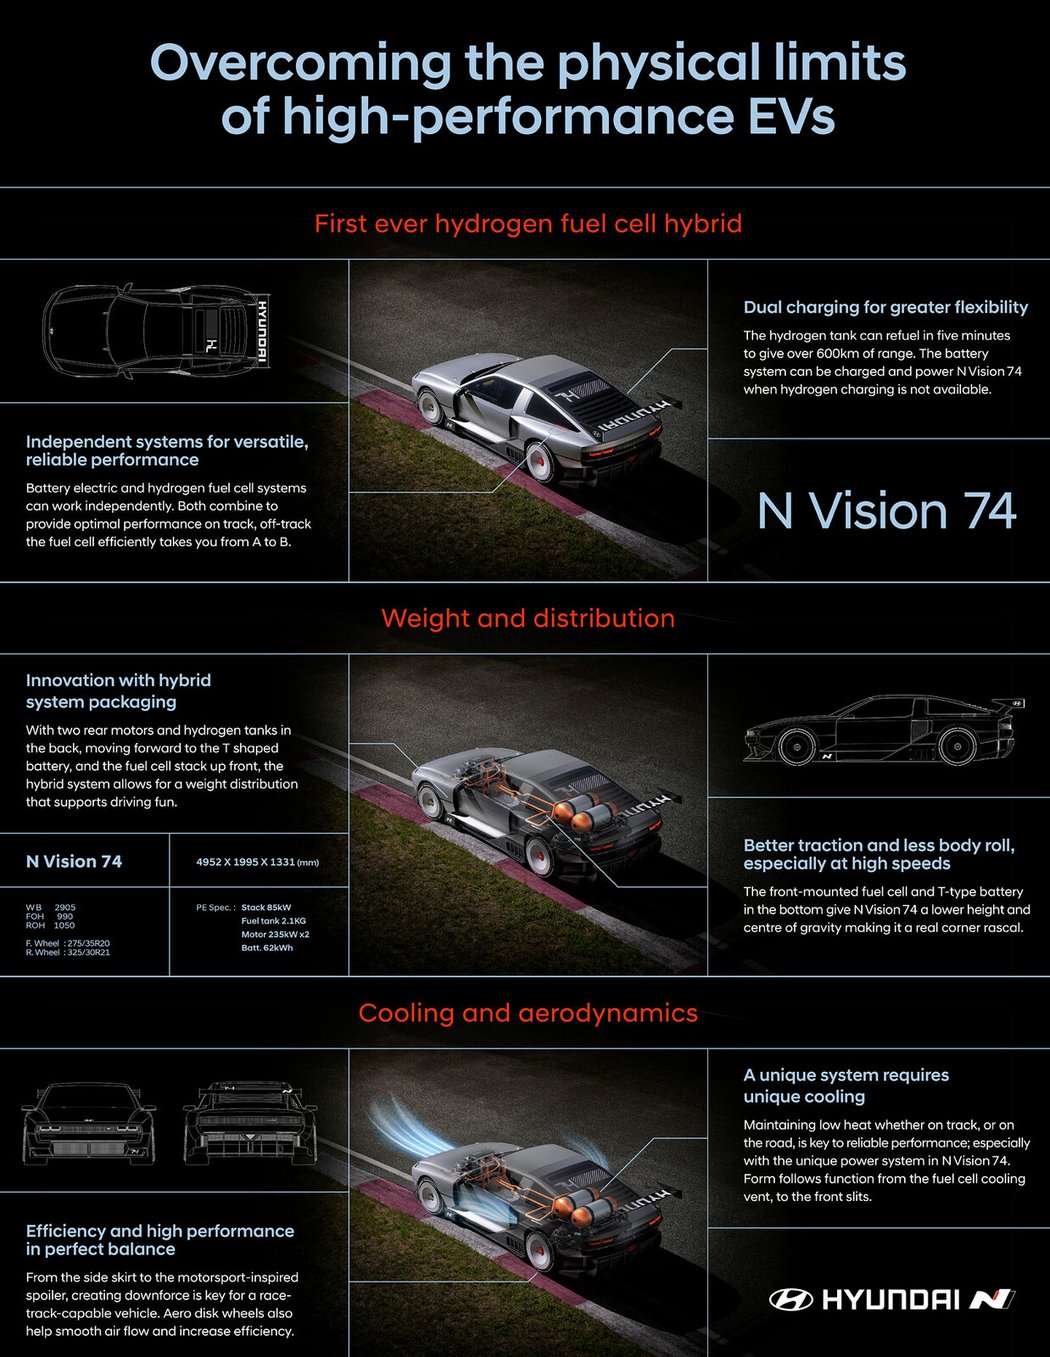 Hyundai N Vision 74